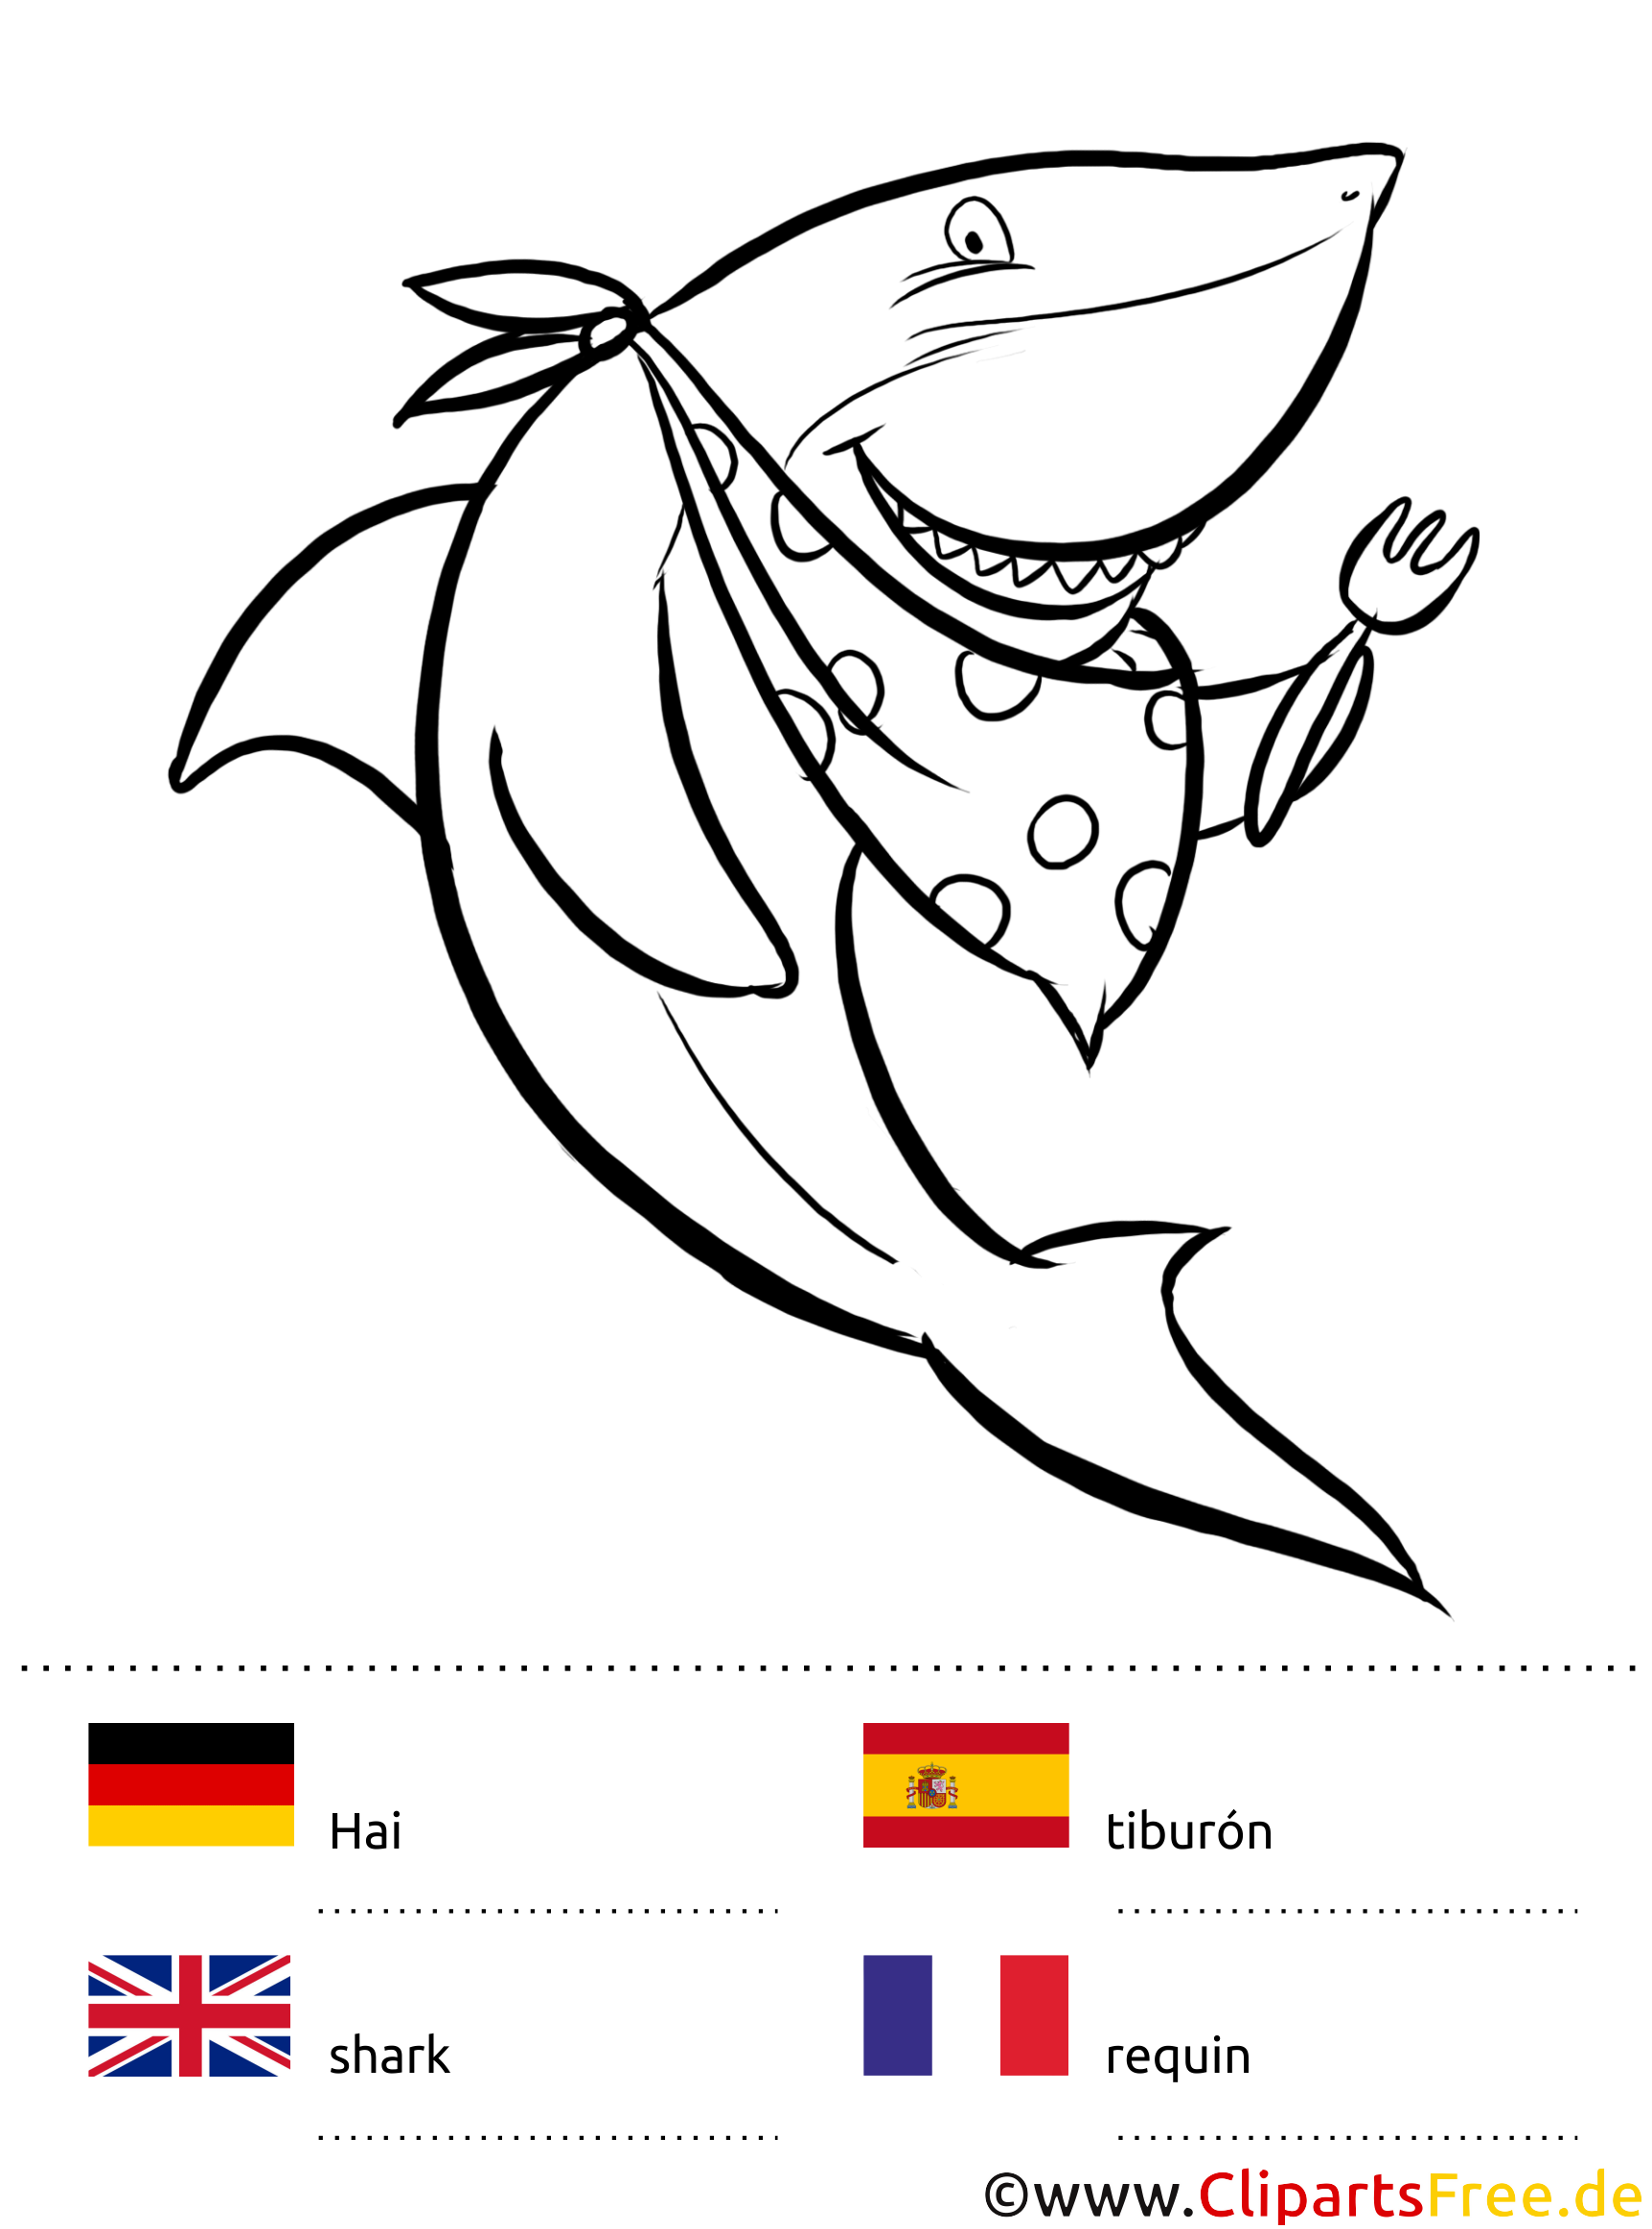 Voice colouring. Раскраски смешные рыбки. Раскраска на немецком. Раскраска на немецком языке. Бейби Шарк раскраска вертикальные.